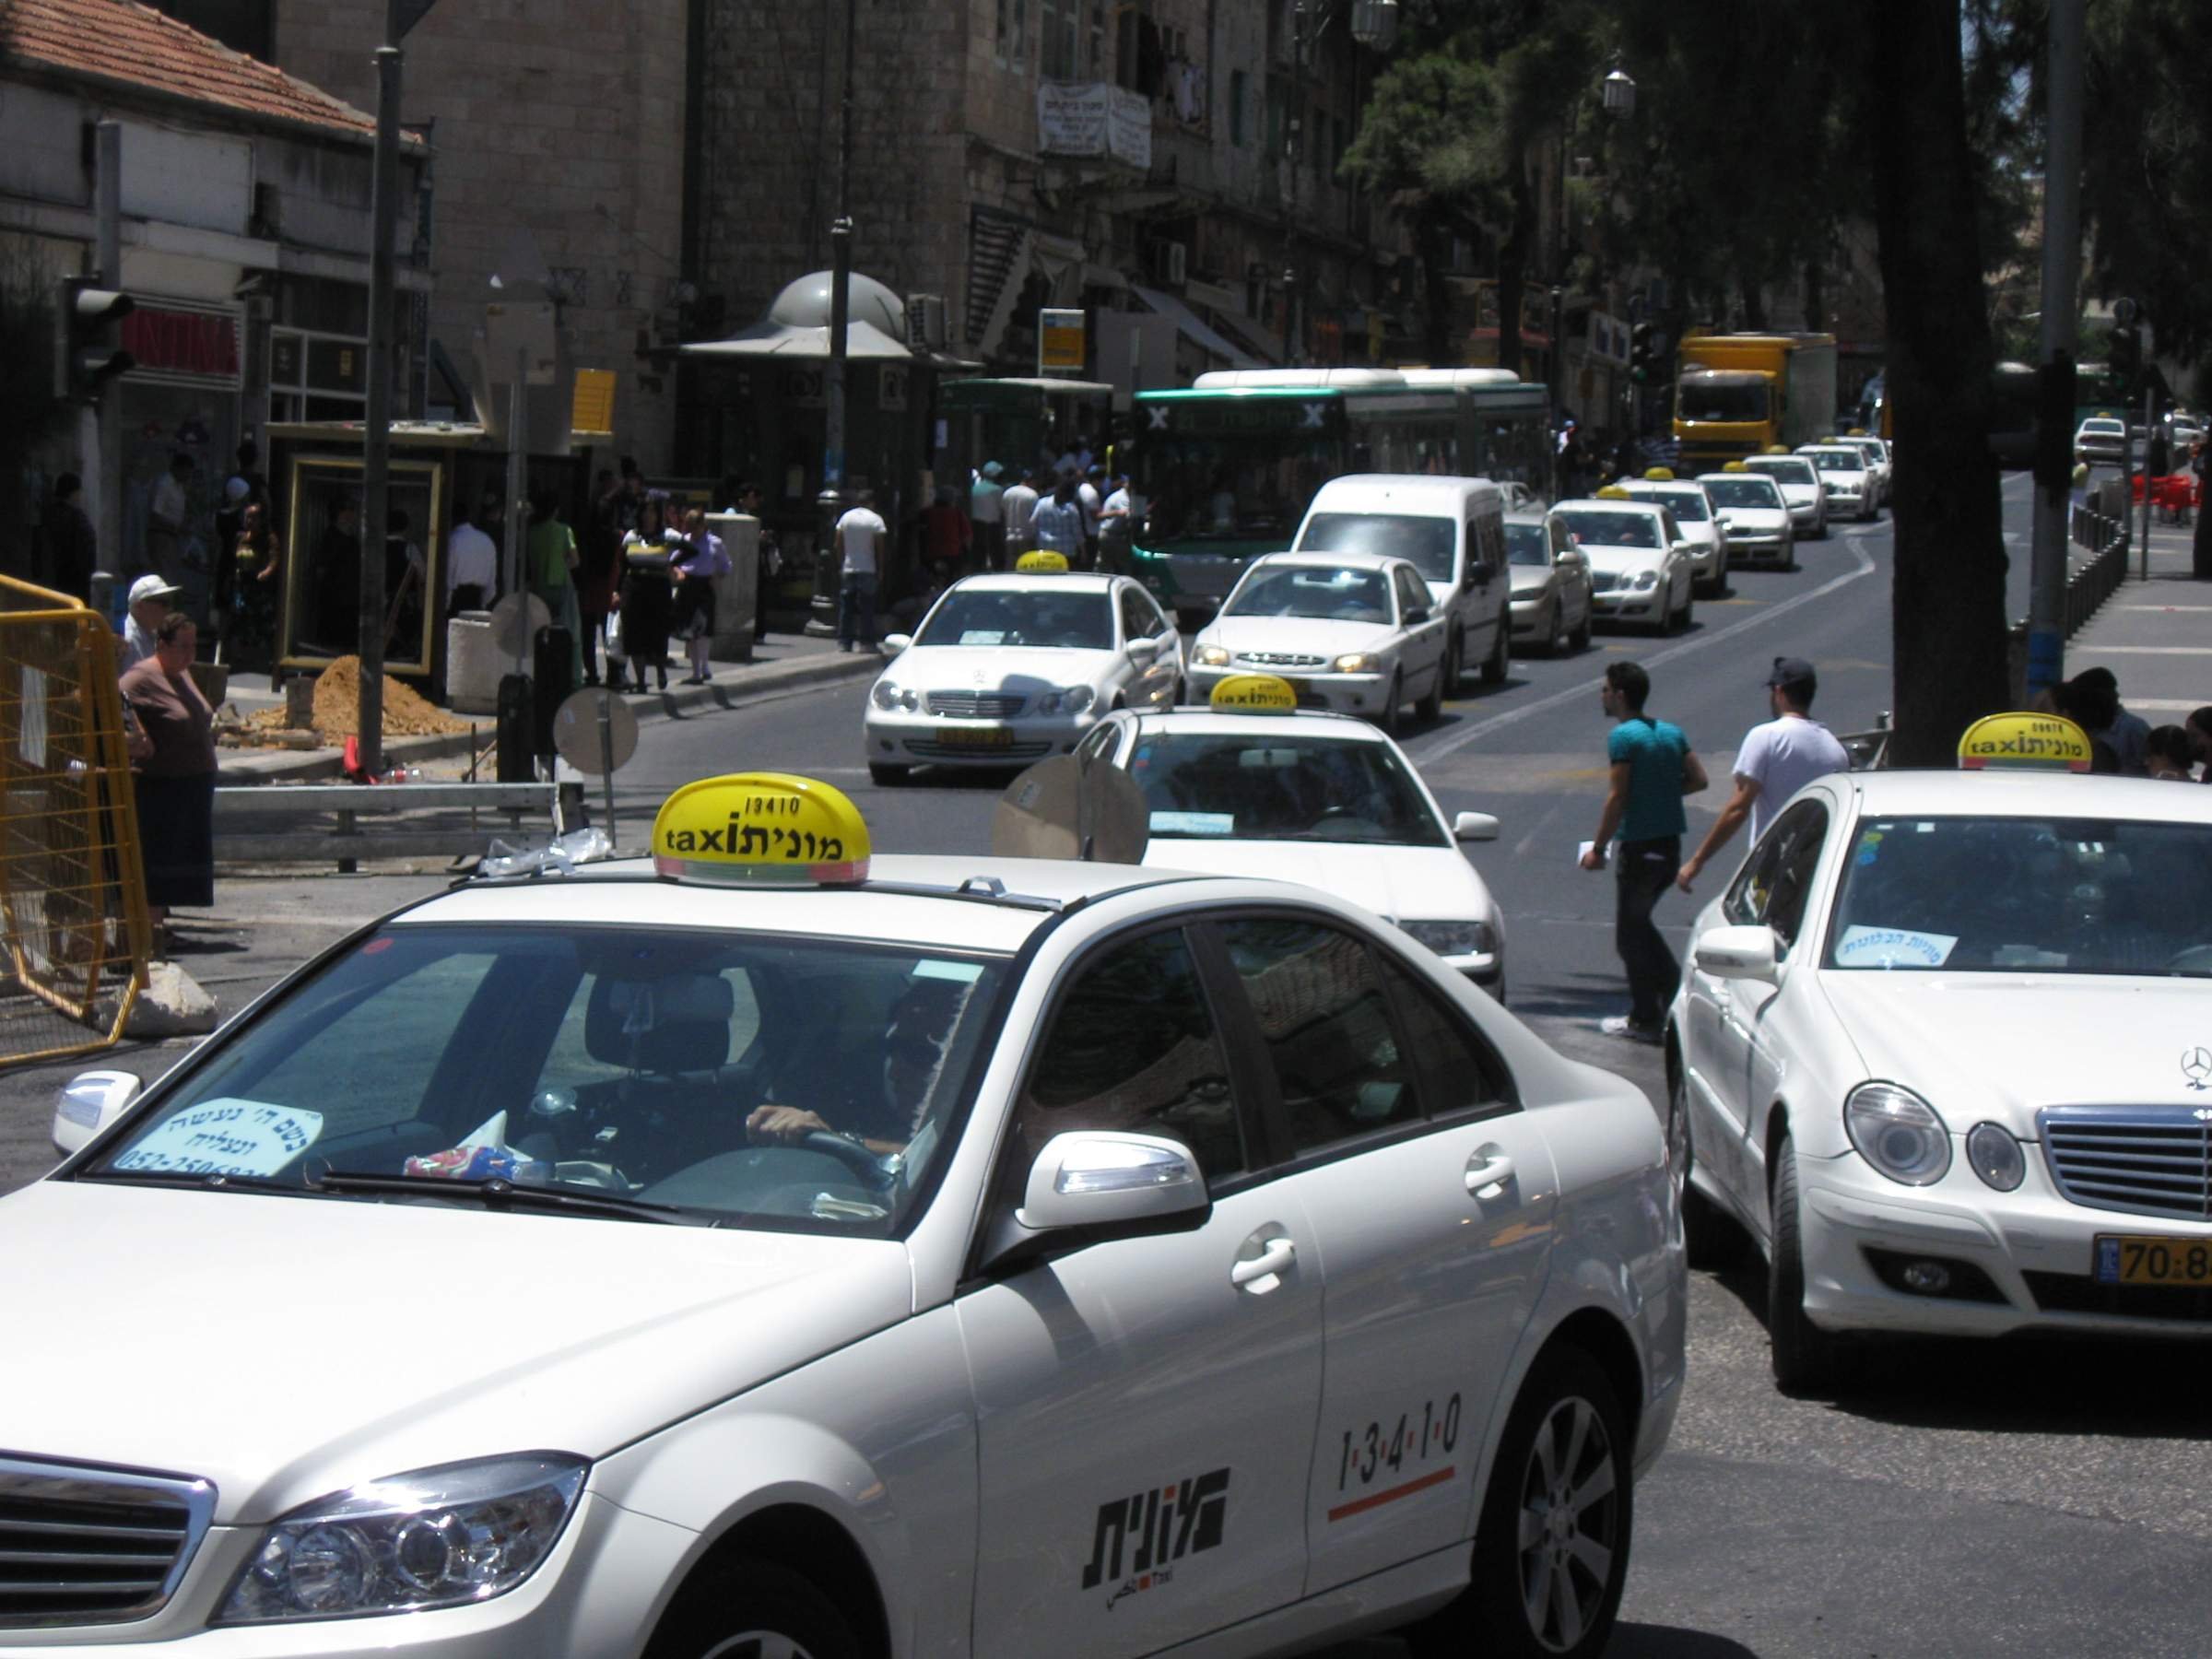 Особенности работы такси в израиле в 2021 году